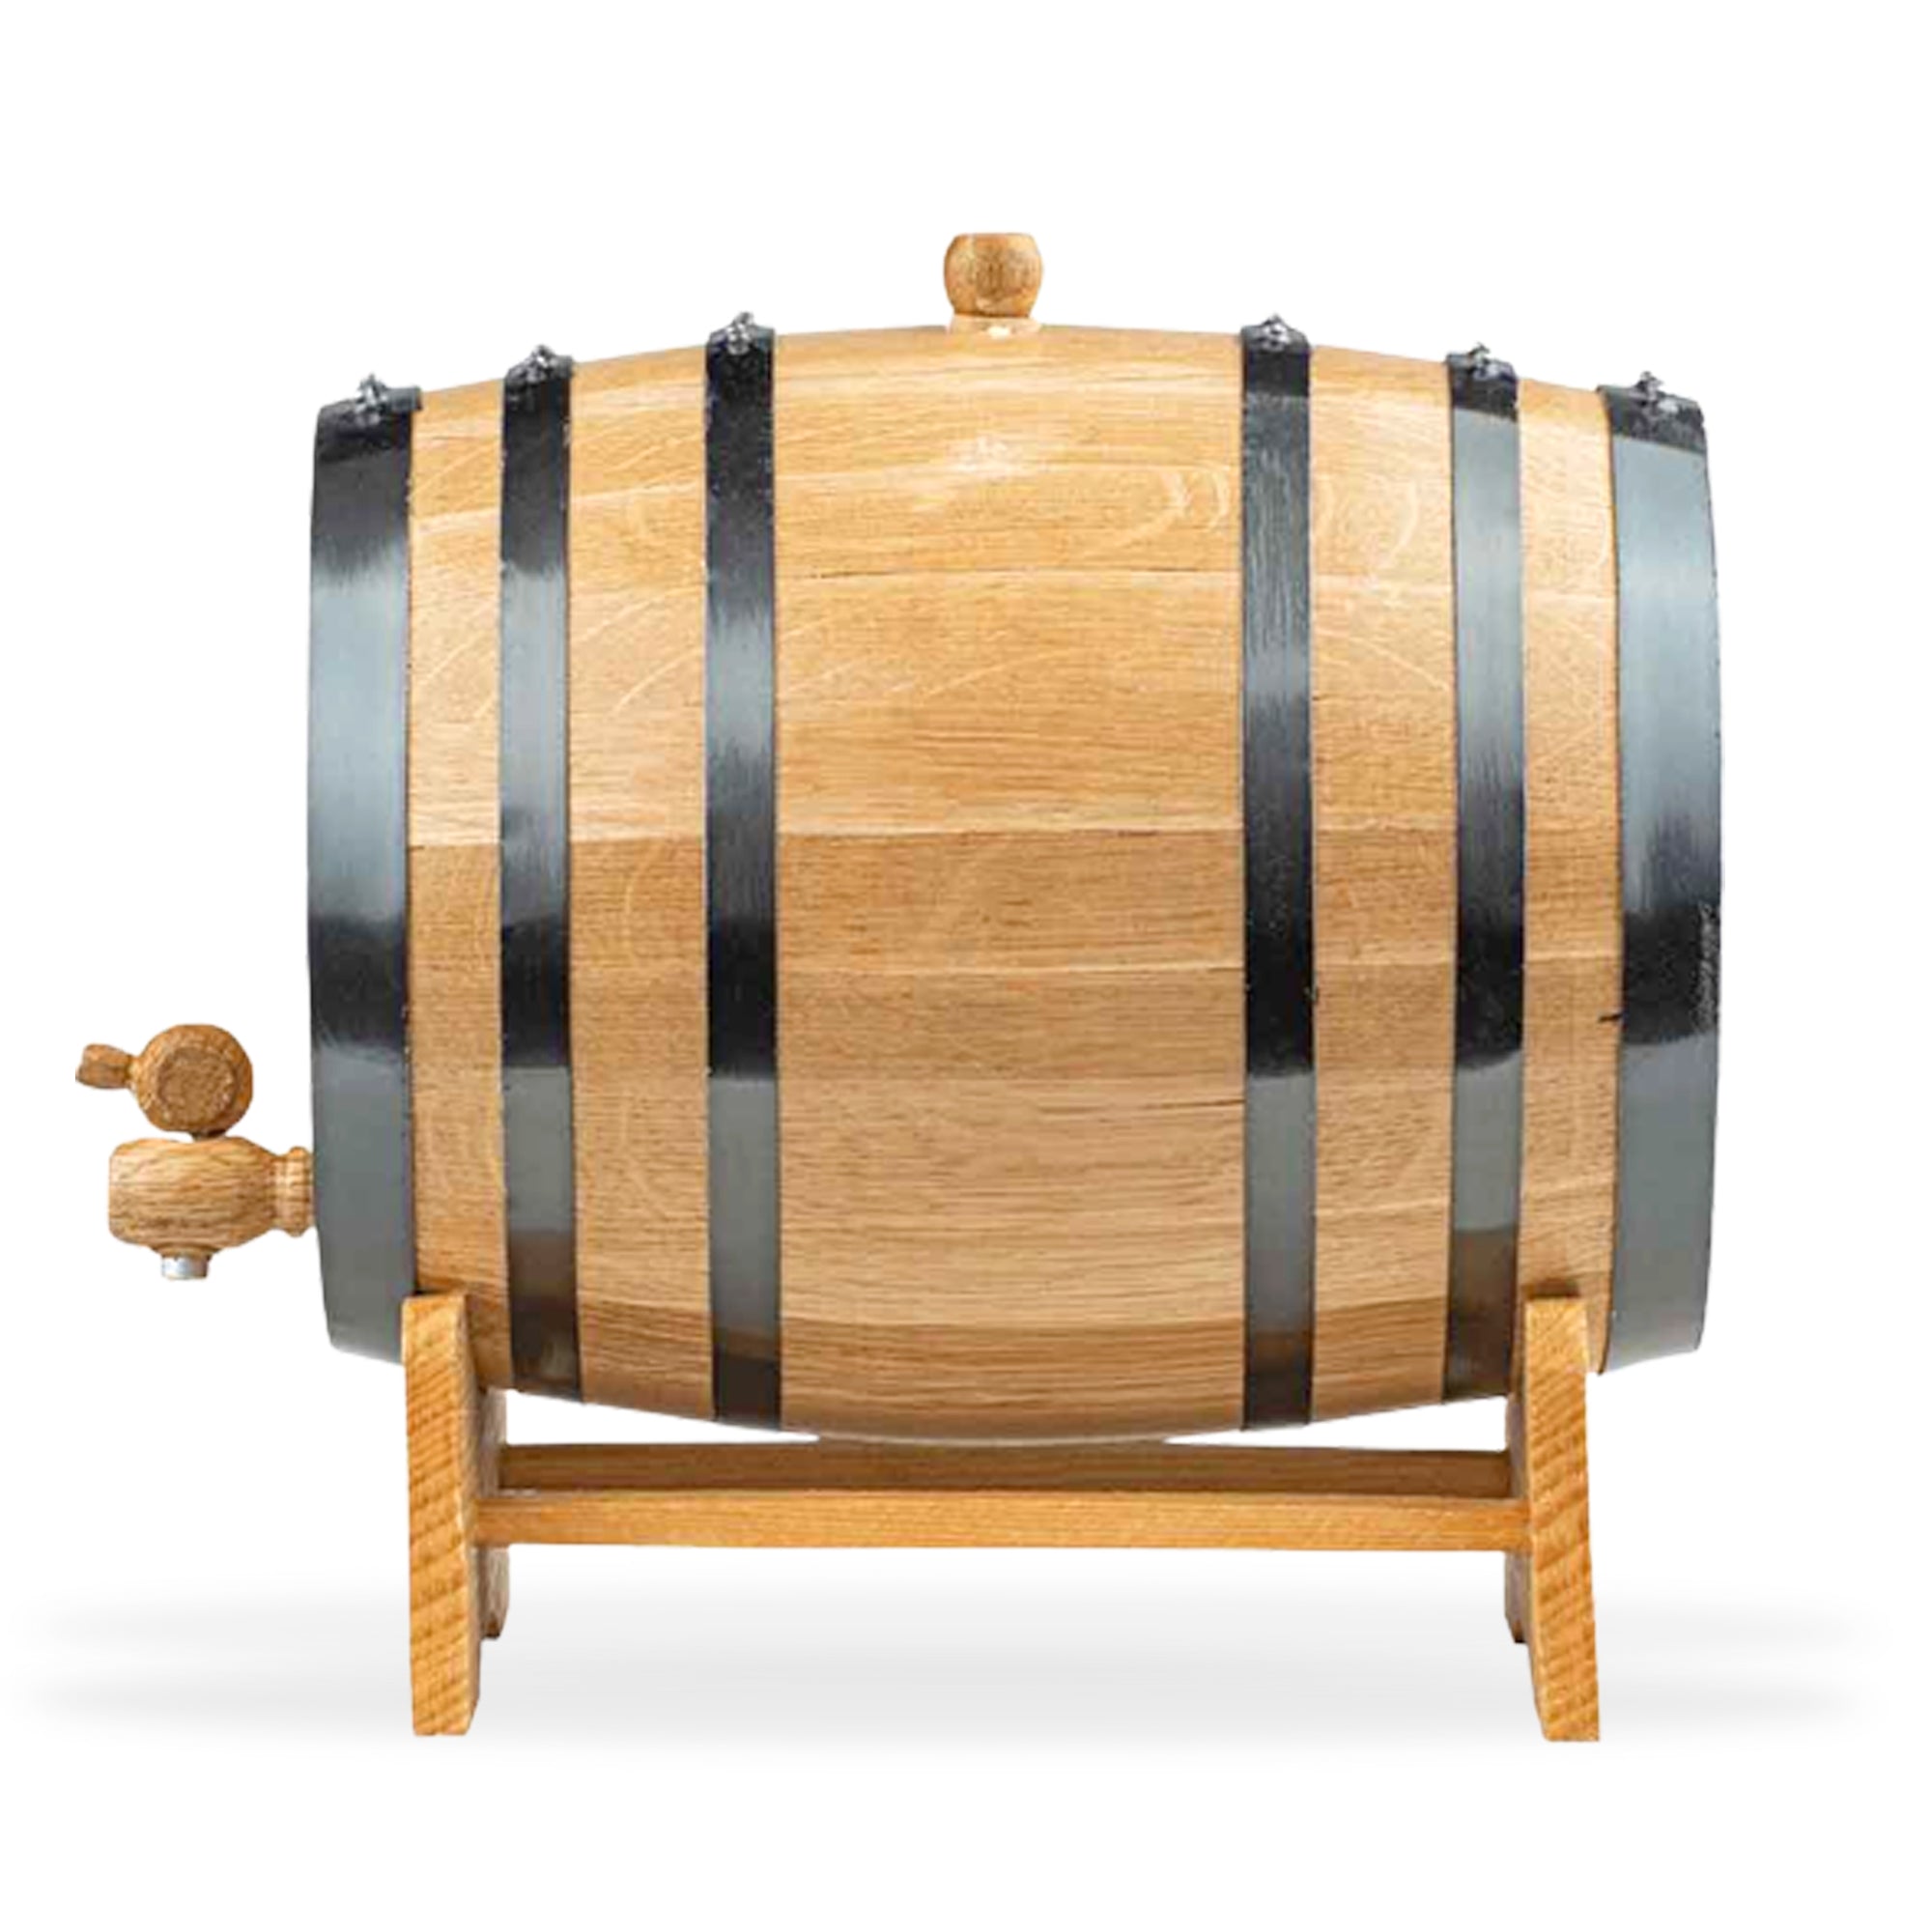 Oak Aging Barrel Kit | Personalized Small Oak Barrel with Deer Head - Blind Pig Drinking Co.